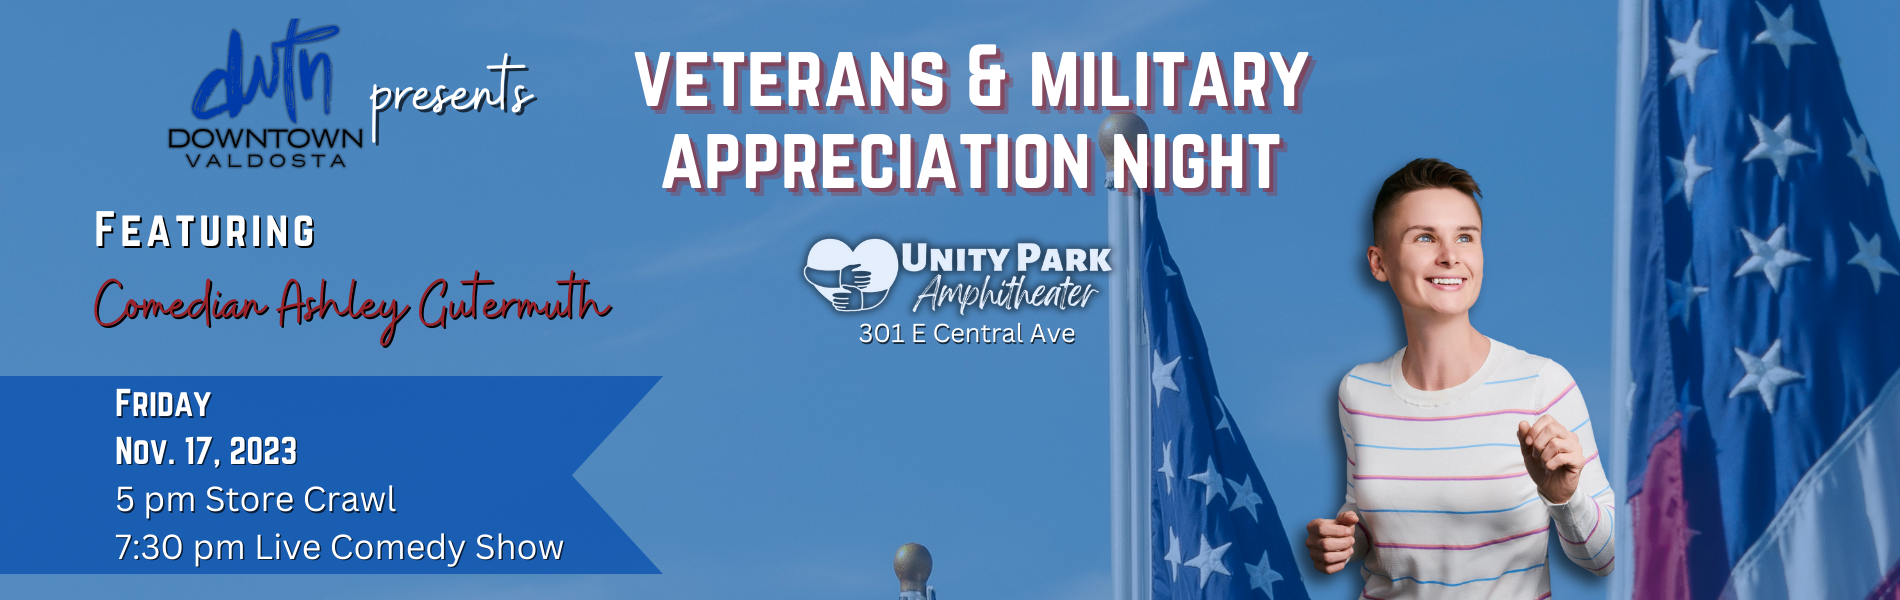 Veterans & Military Appreciation Night